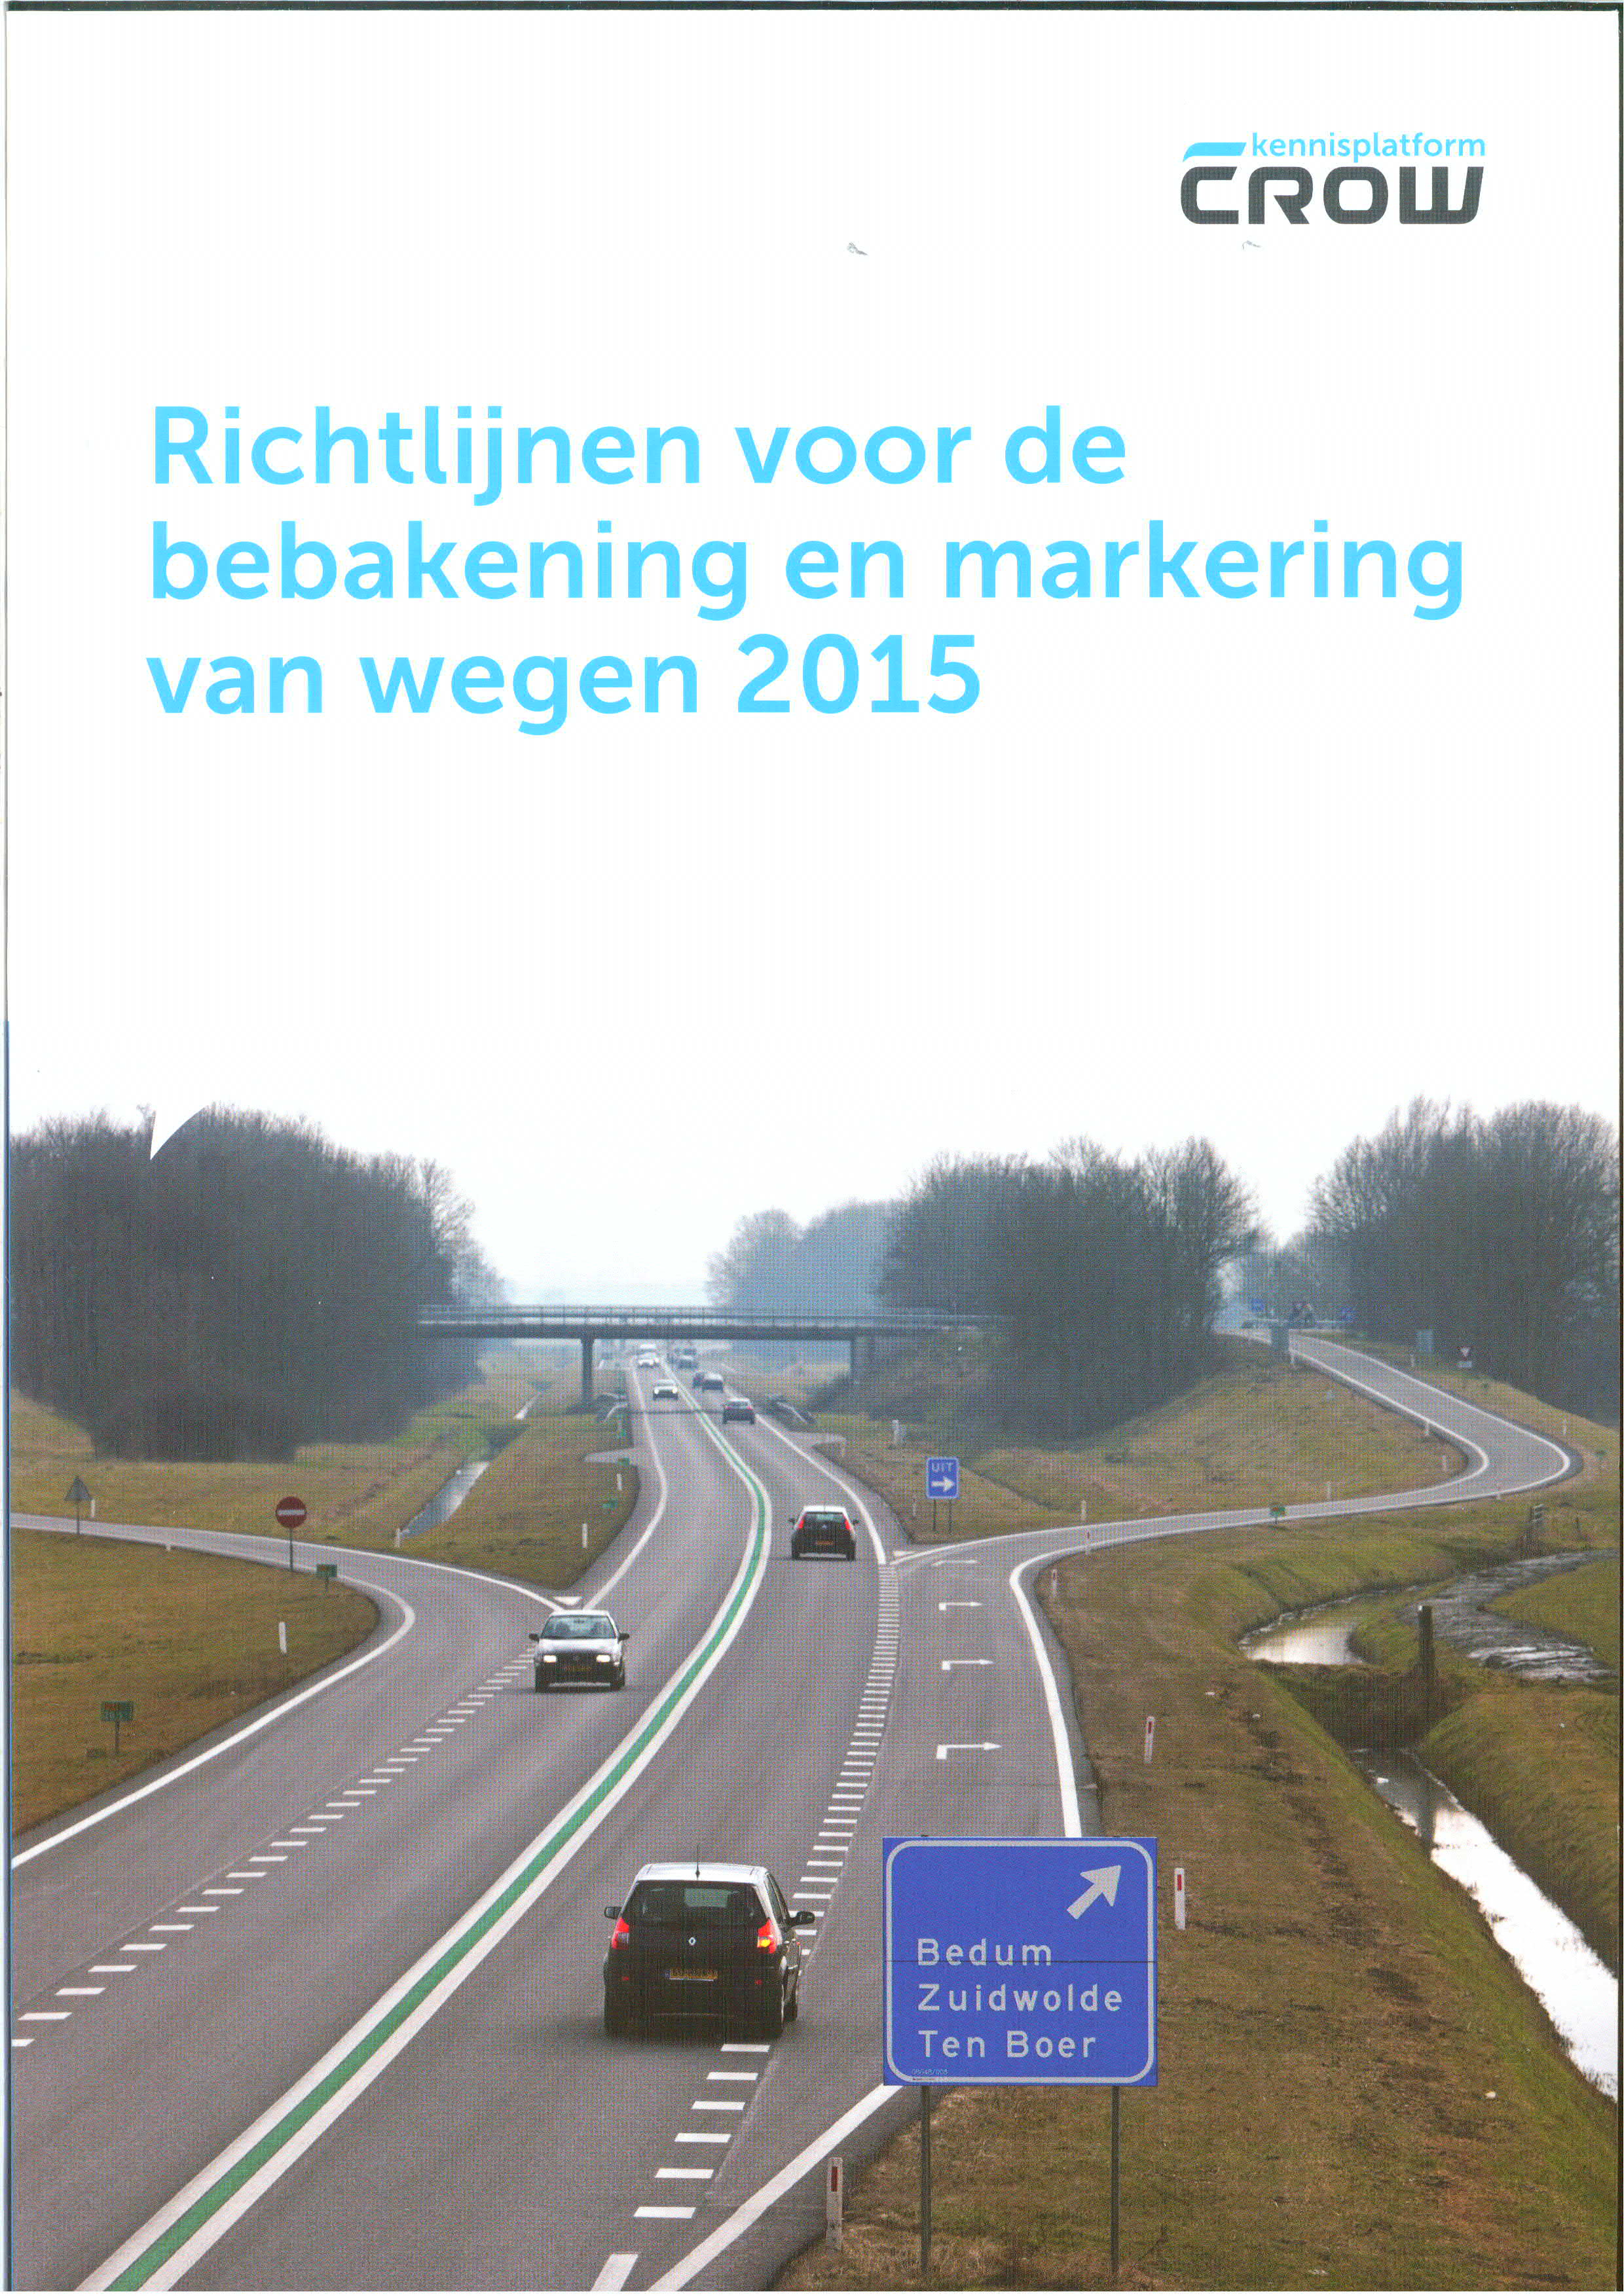 Richtlijnen voor de bebakening en markering van wegen 2015